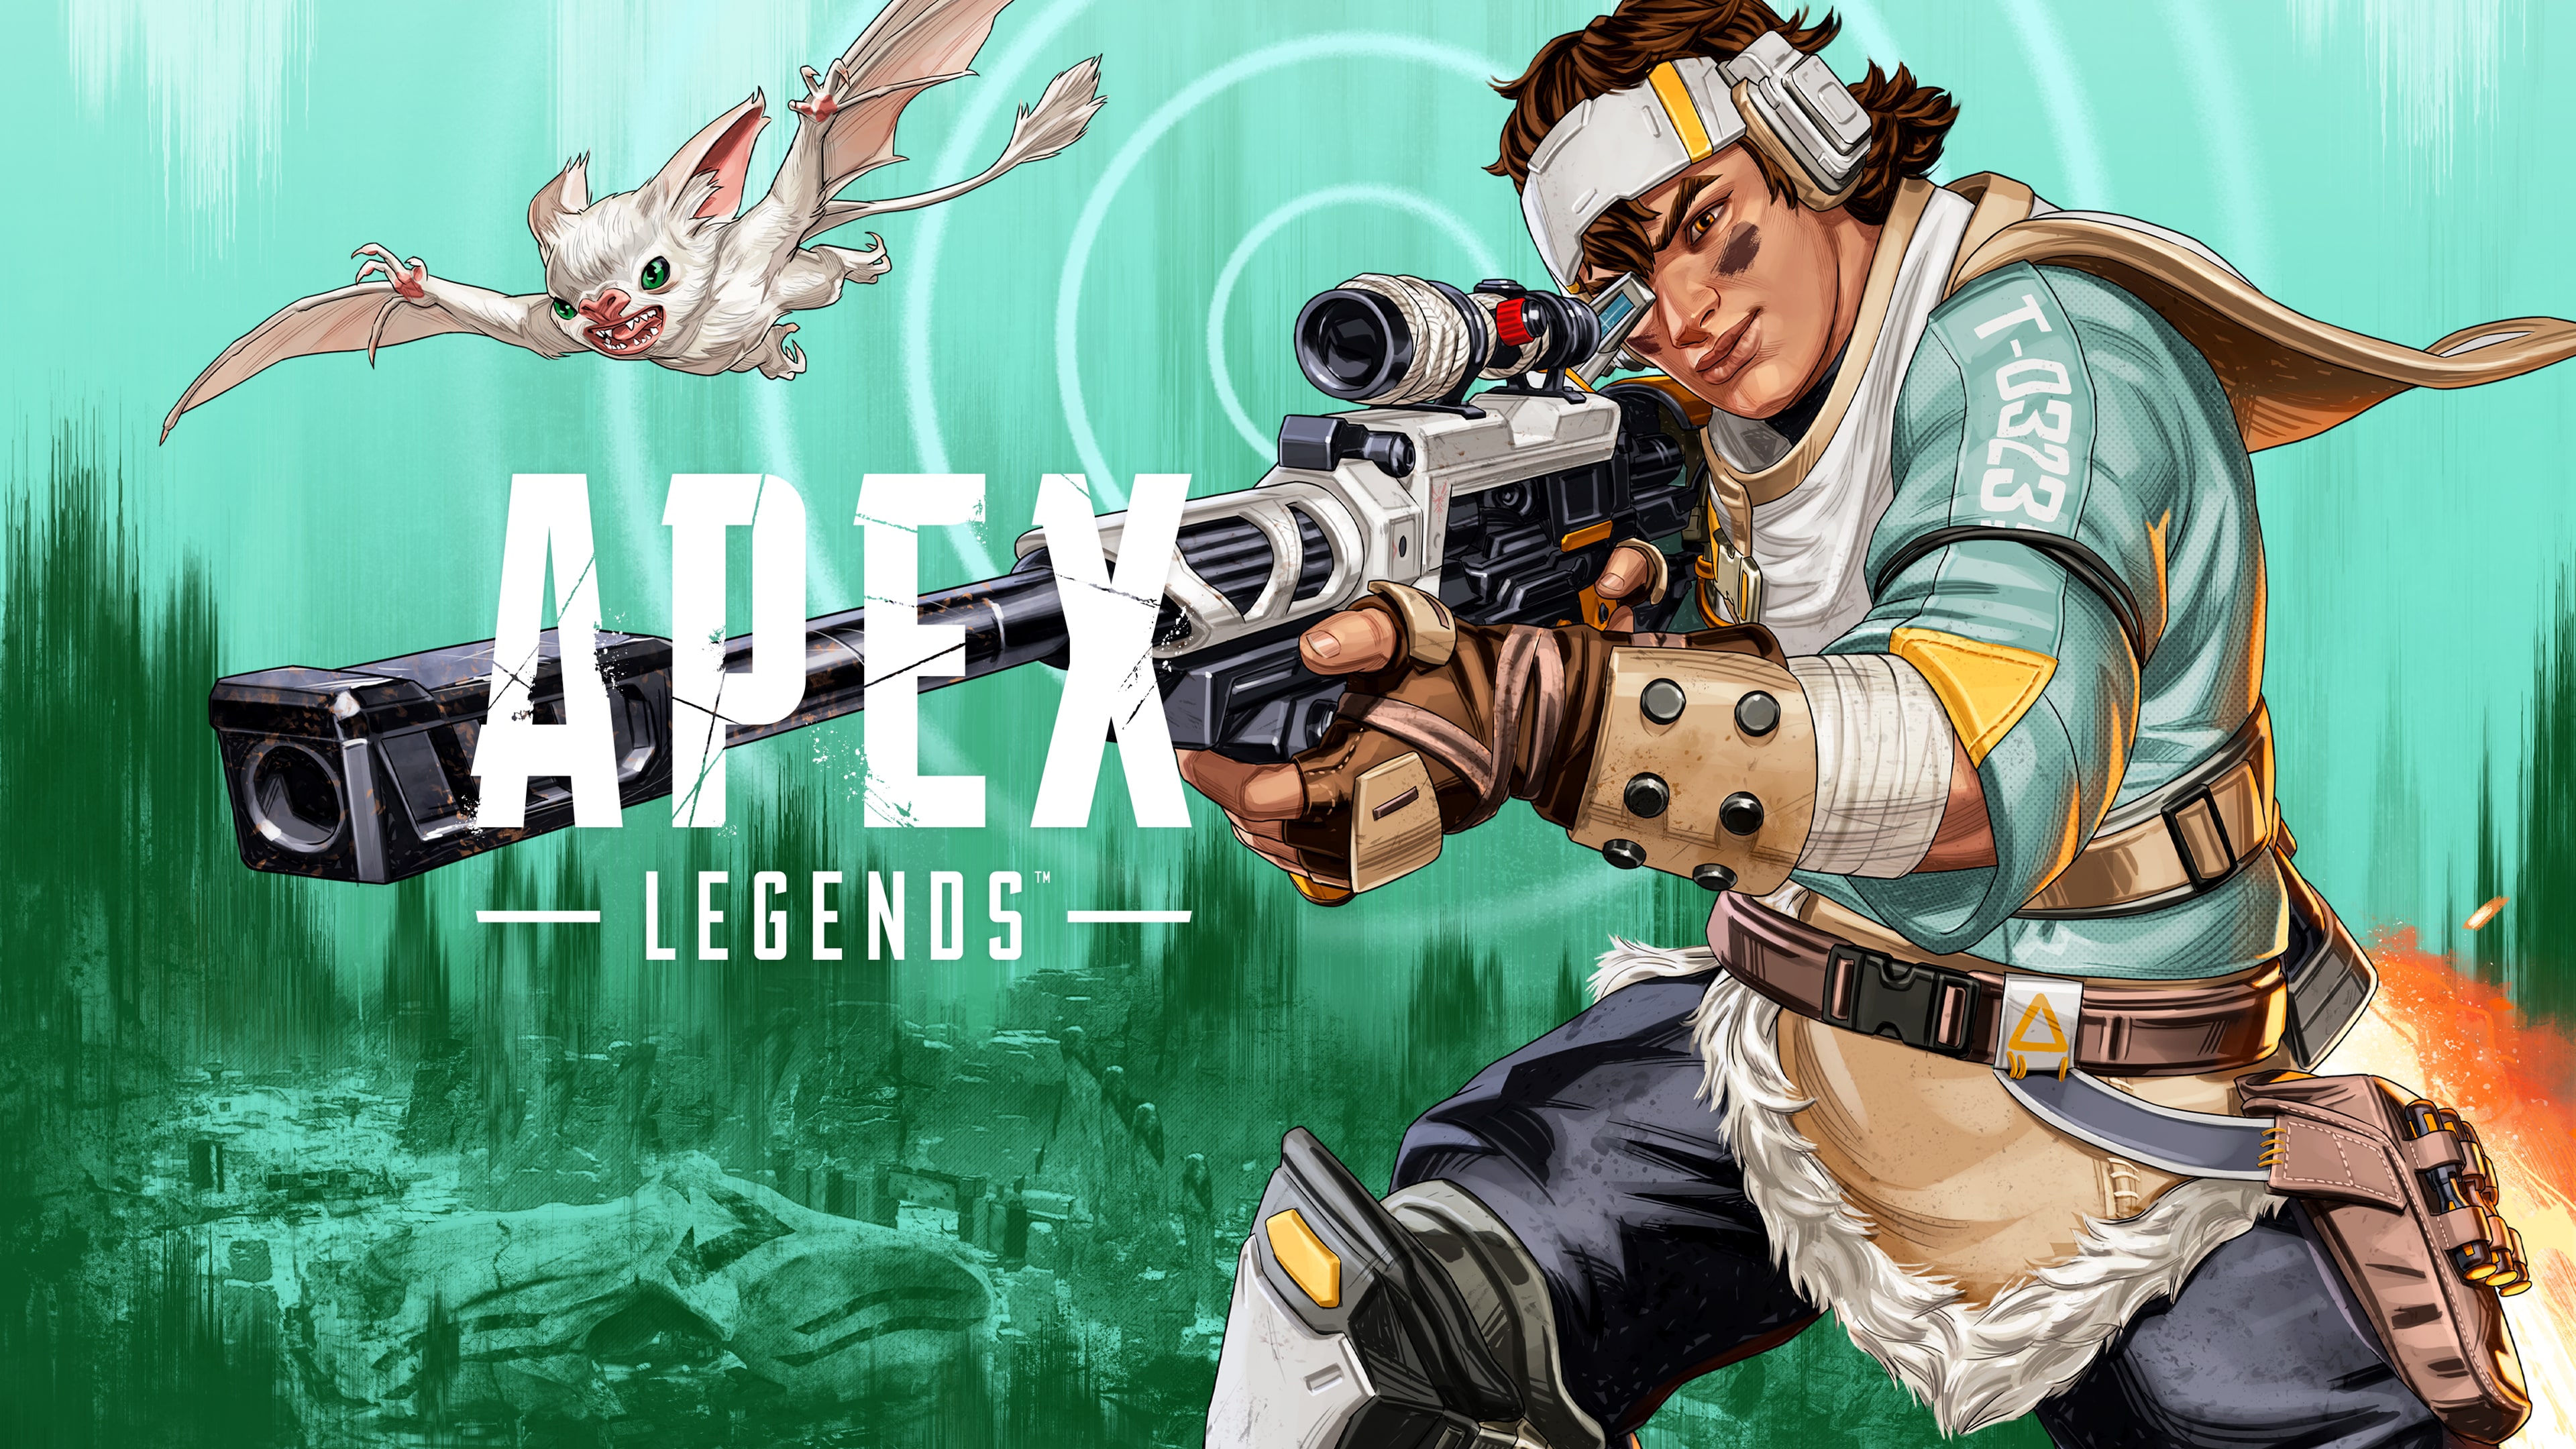 Apex Legends™ PS4™ (日语, 韩语, 简体中文, 繁体中文, 英语)